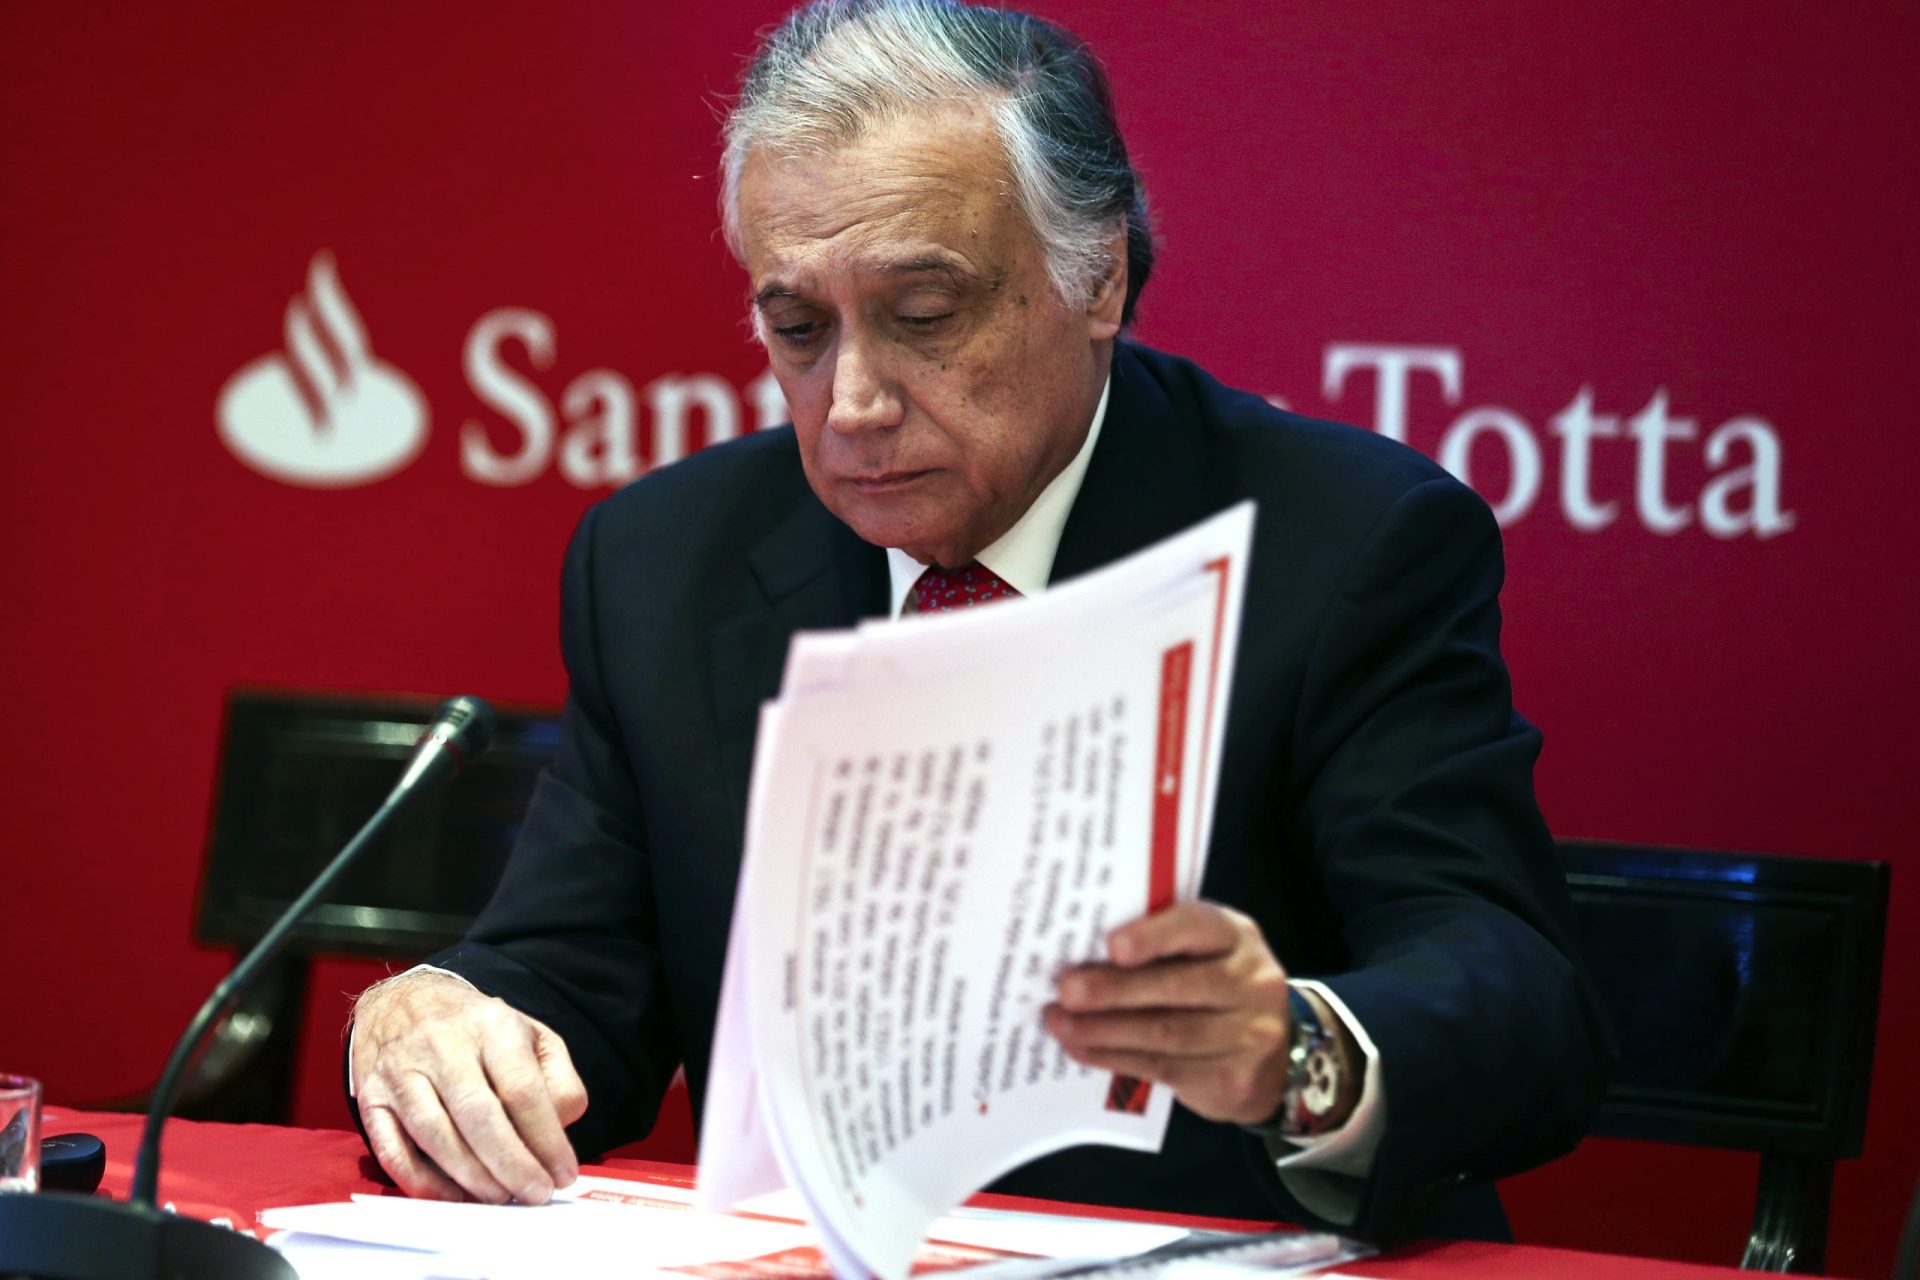 Santander espera informações sobre Novo Banco para apresentar proposta